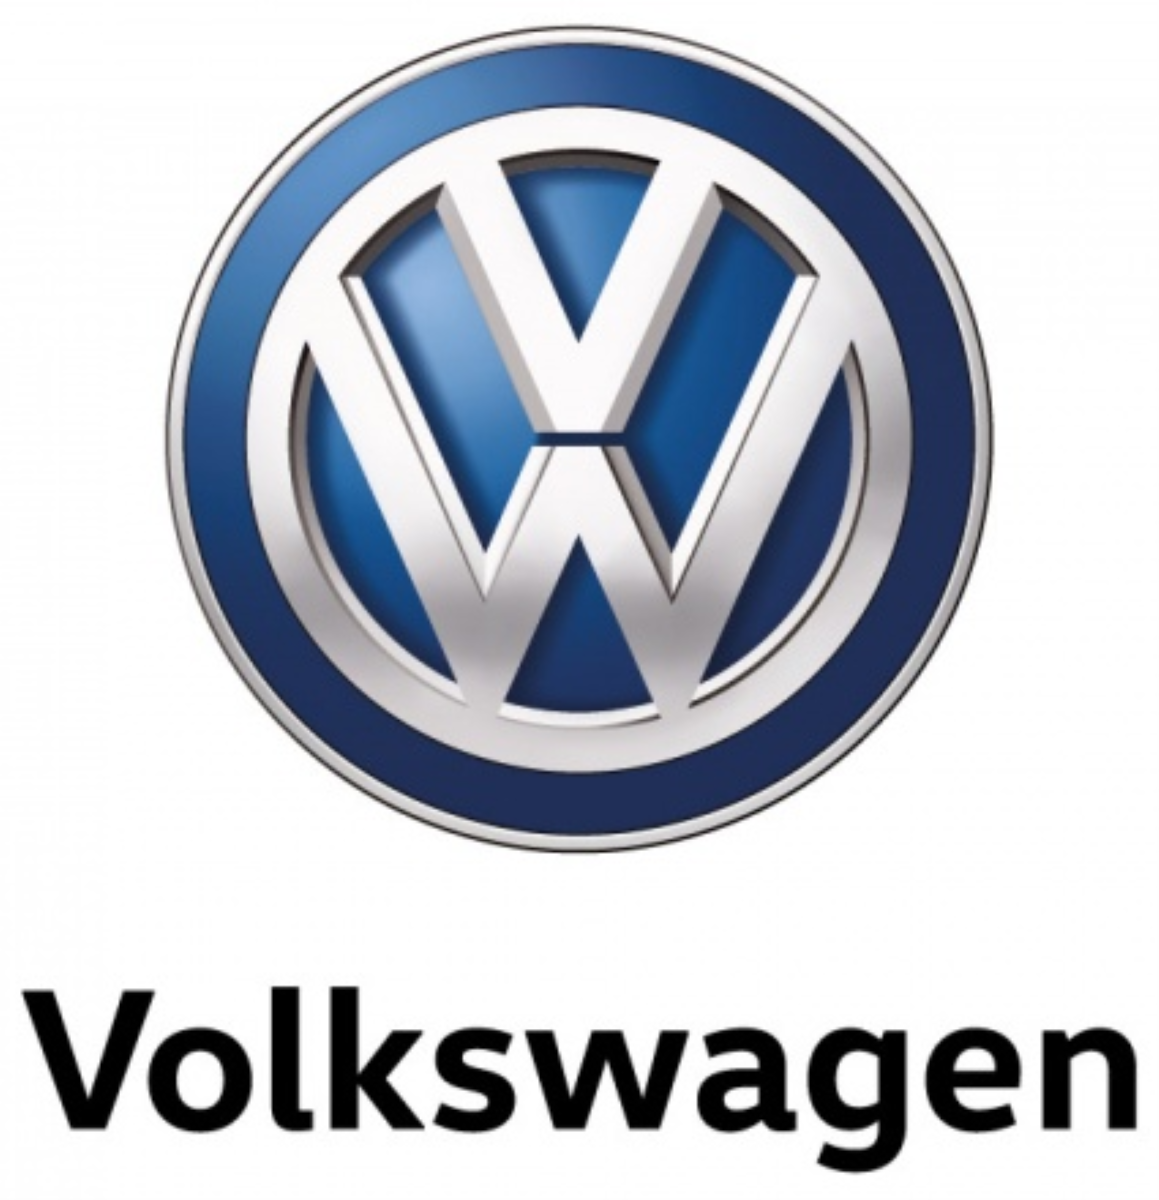  Volkswagen Araçlar